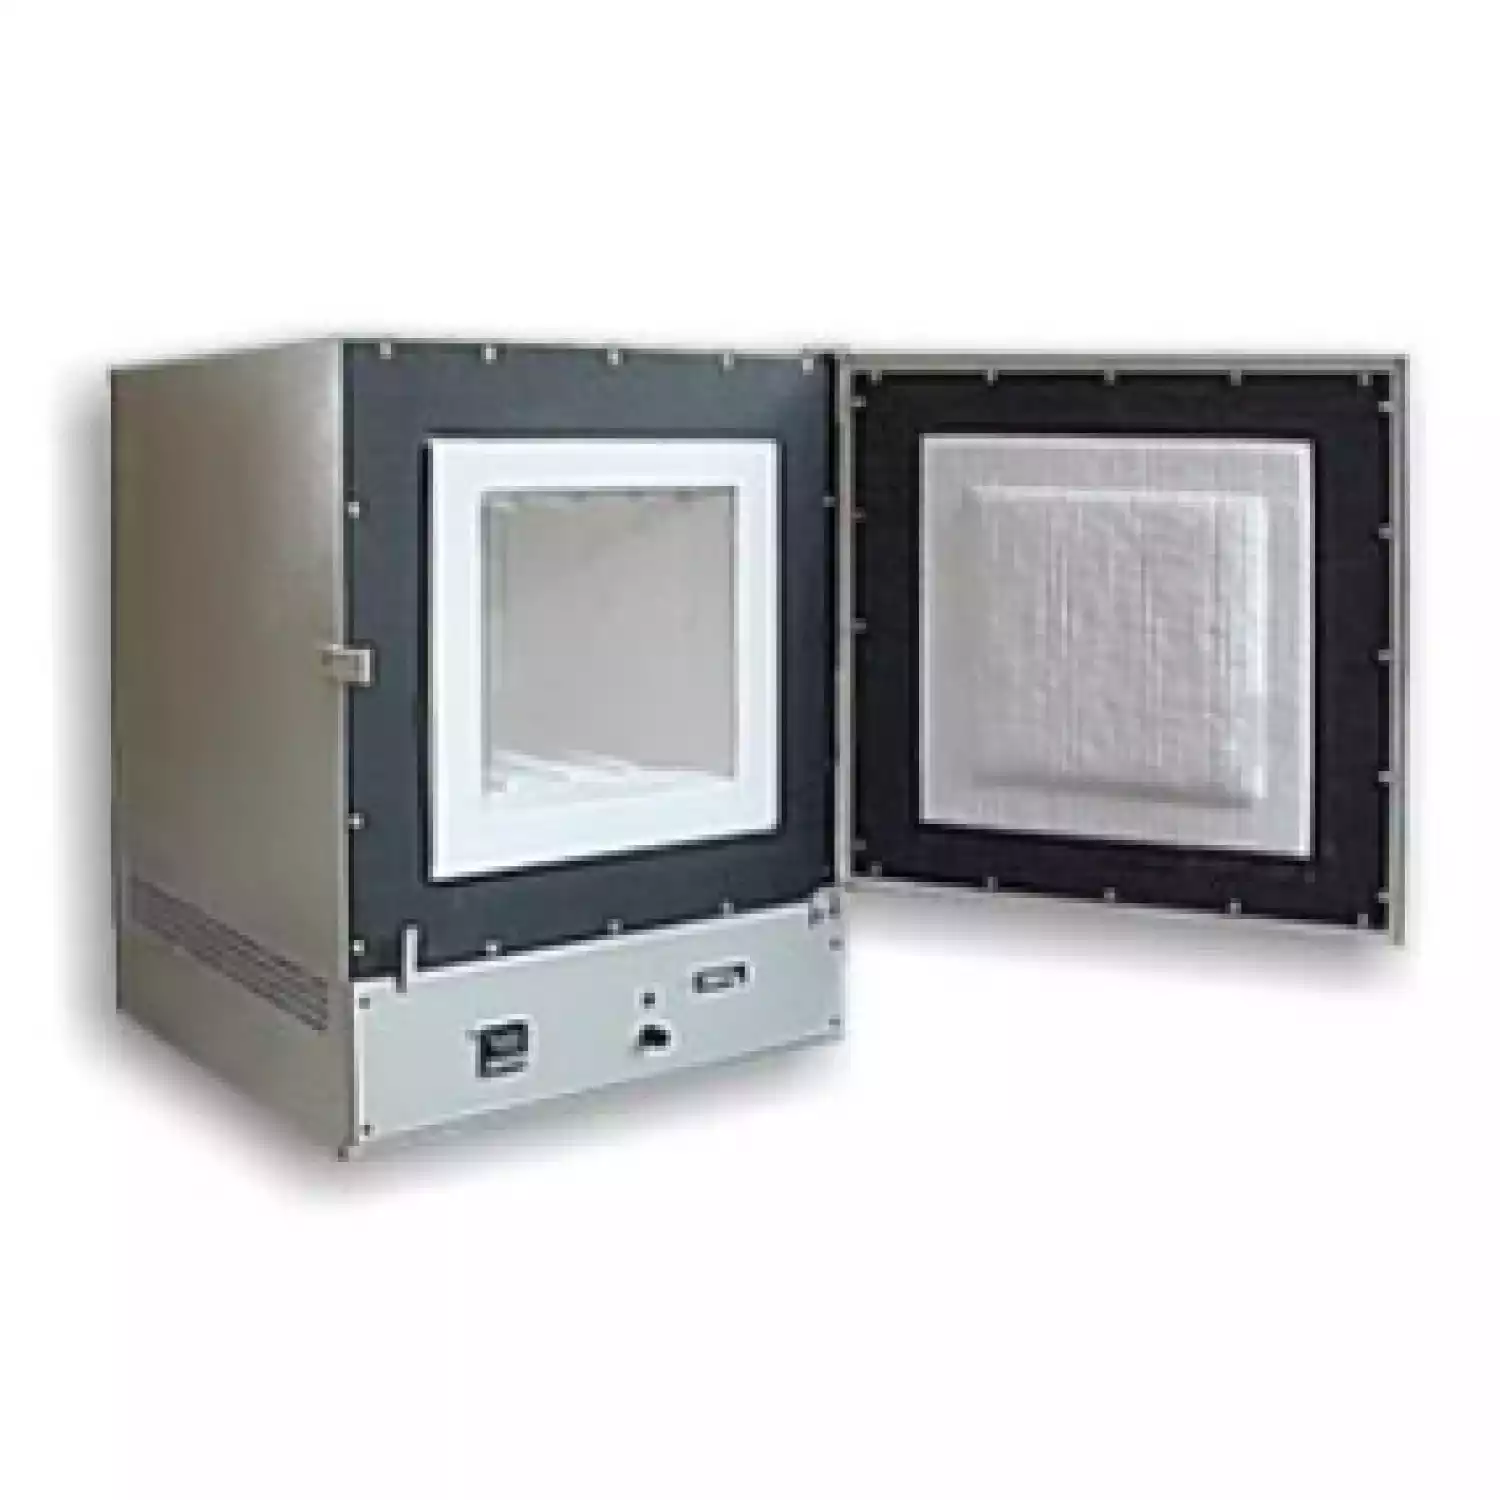 SNOL 30/1100 муфельная печь (терморегулятор интерфейс; 30 л) - 1